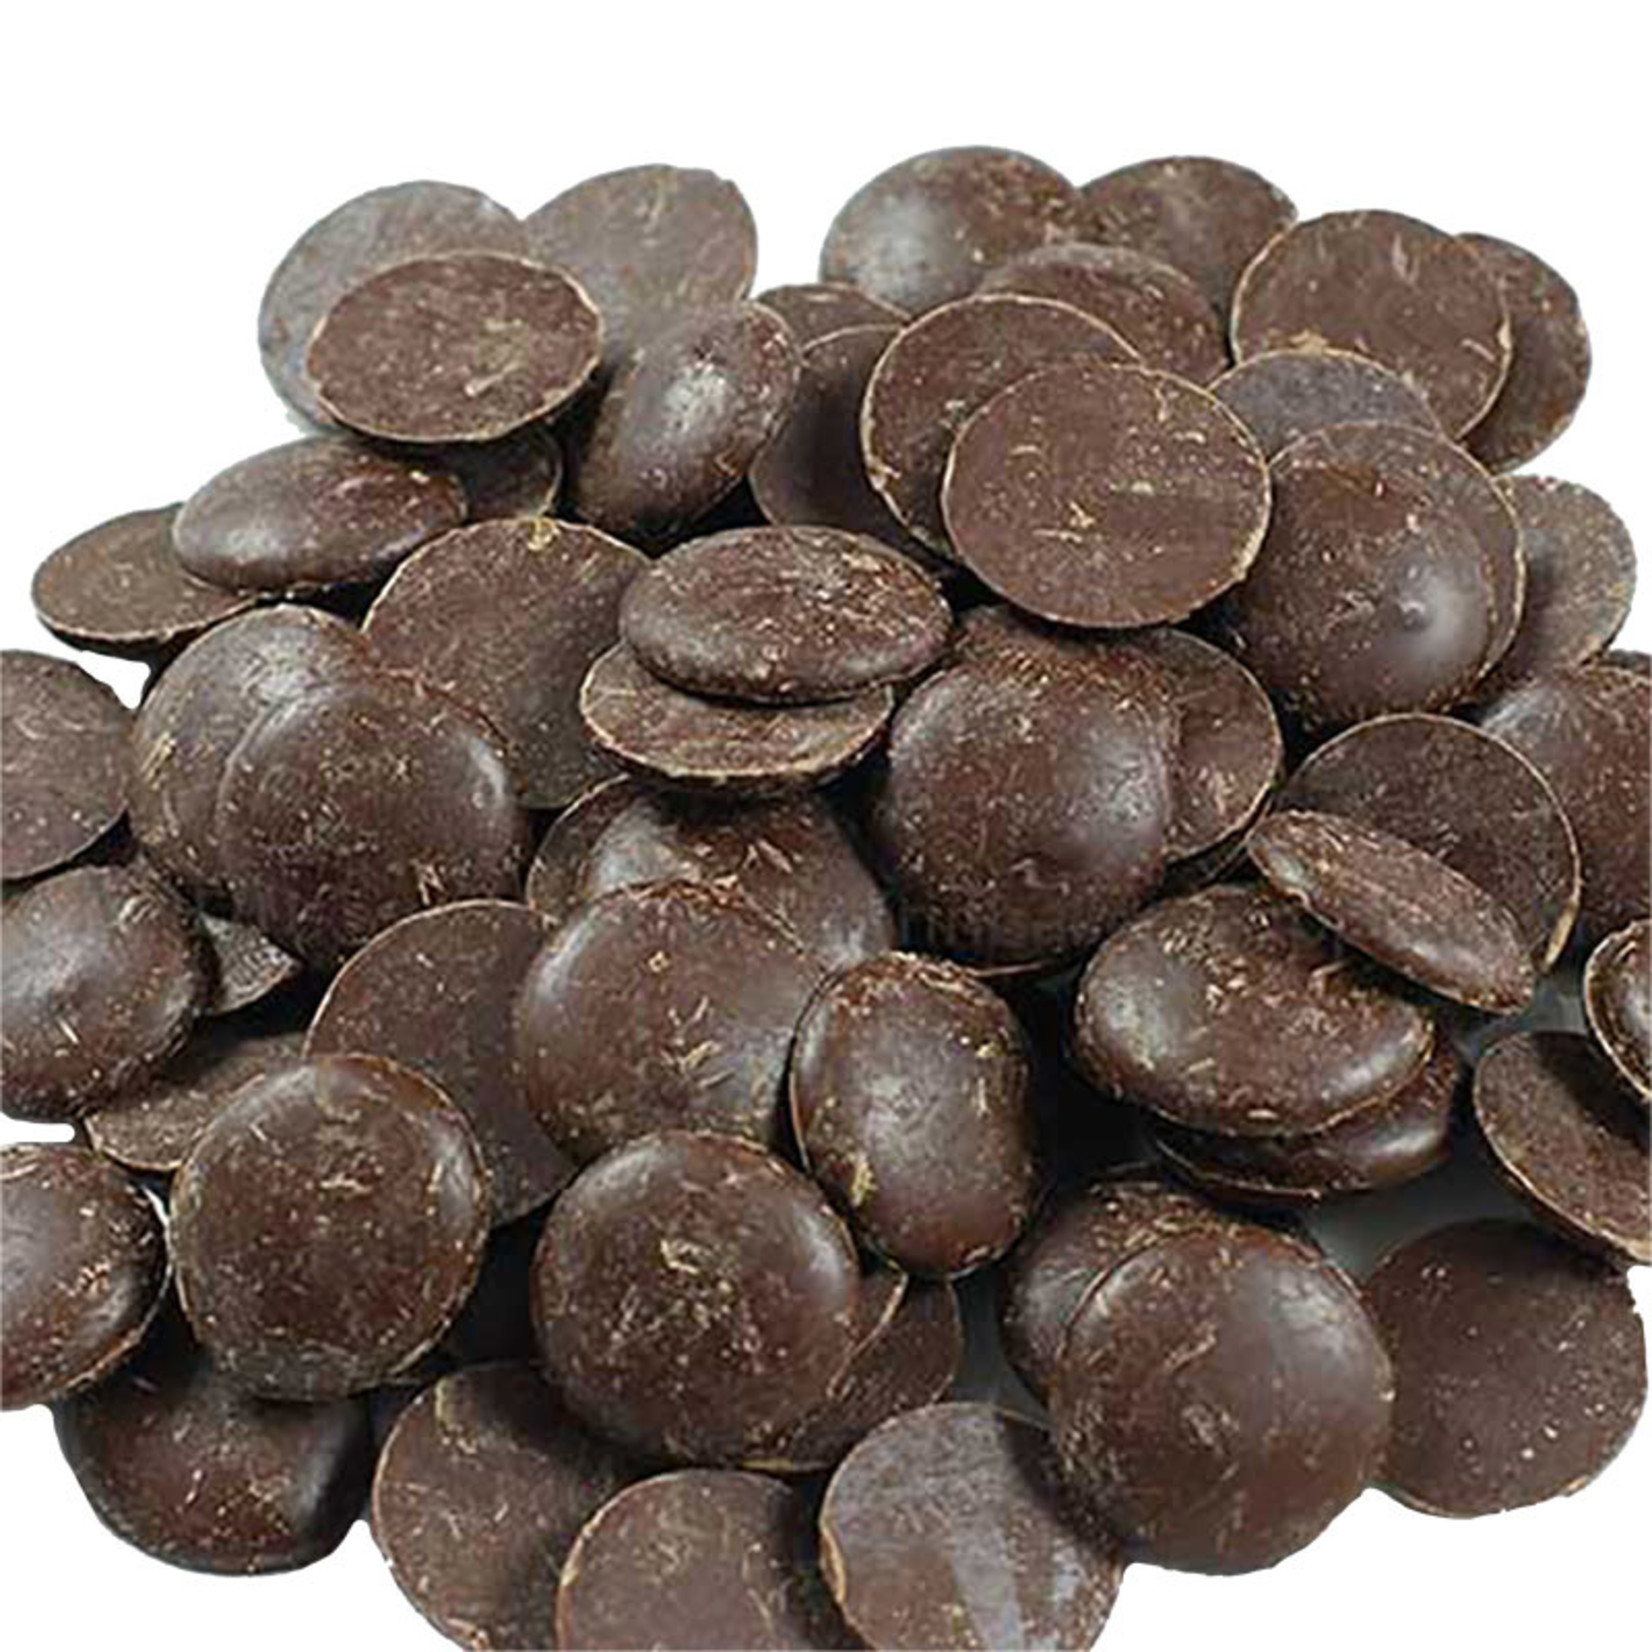 Cacao Barry Cacao Barry - Fleur de Cao Origin Dark Chocolate 70% - 1 lb CHD-O70FLEU-US-U77-R